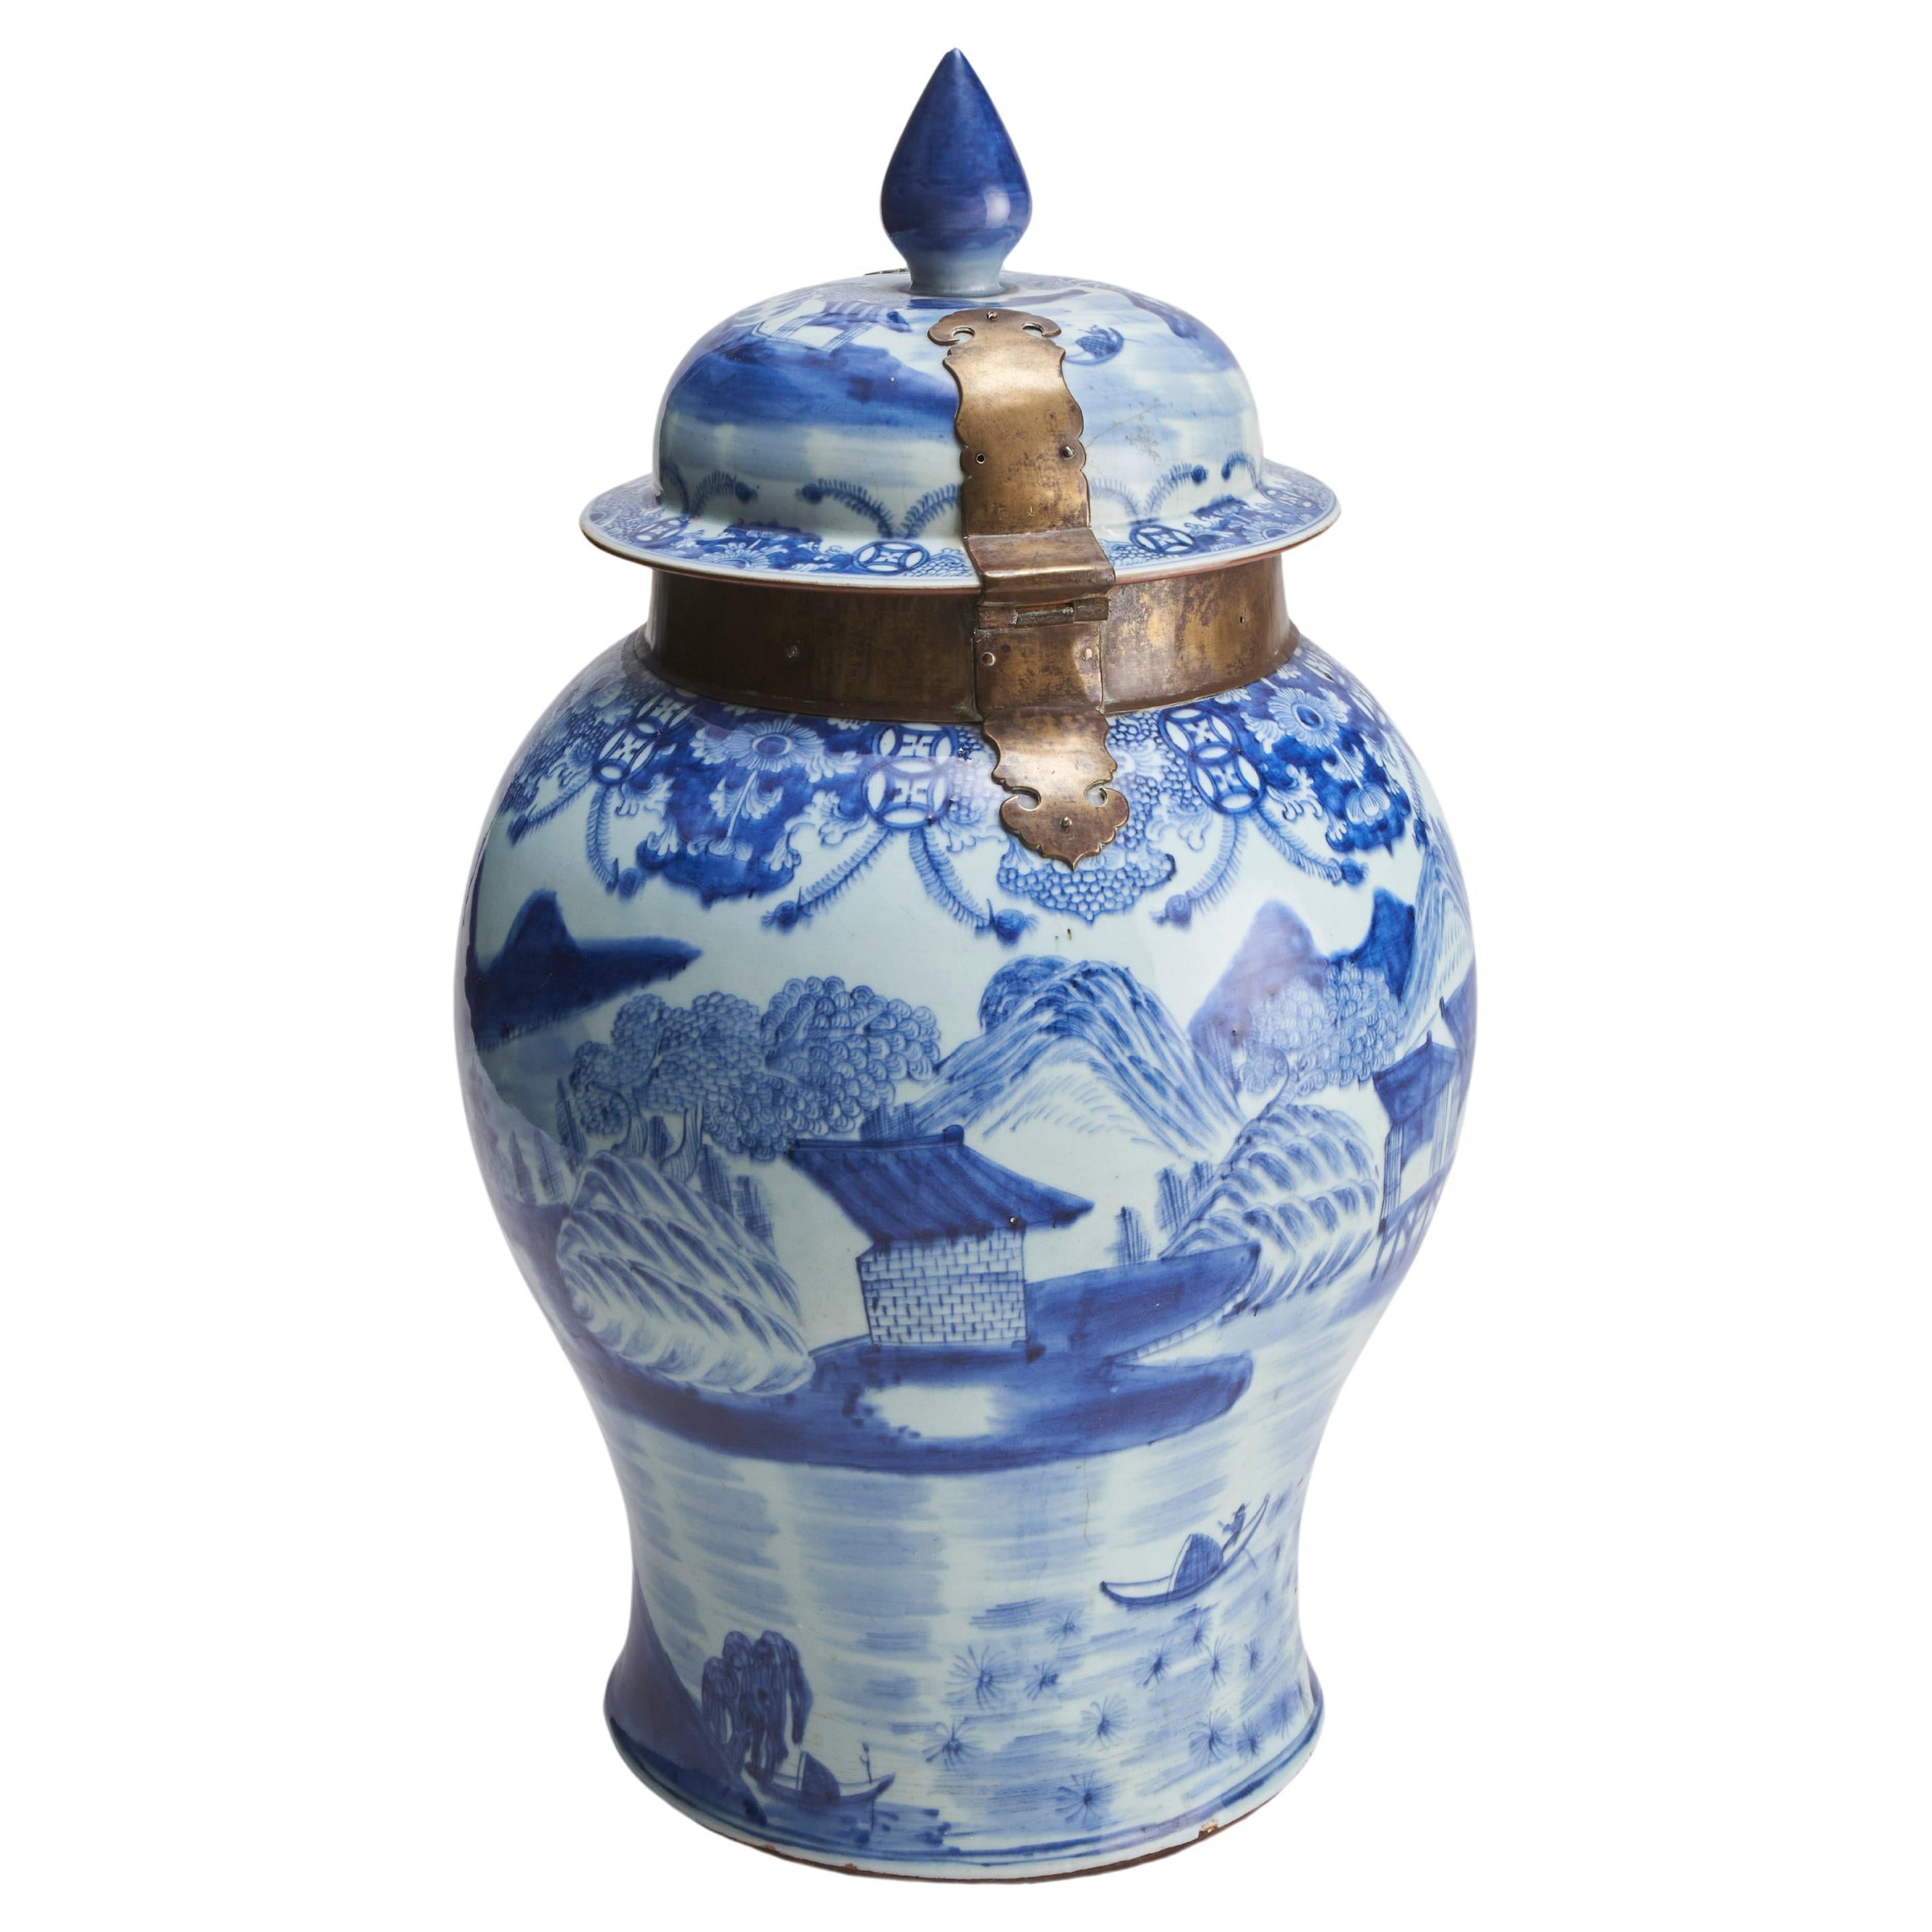 Großer blau-weißer Tempelkrug und Deckel aus chinesischem Porzellan (18. Jahrhundert)